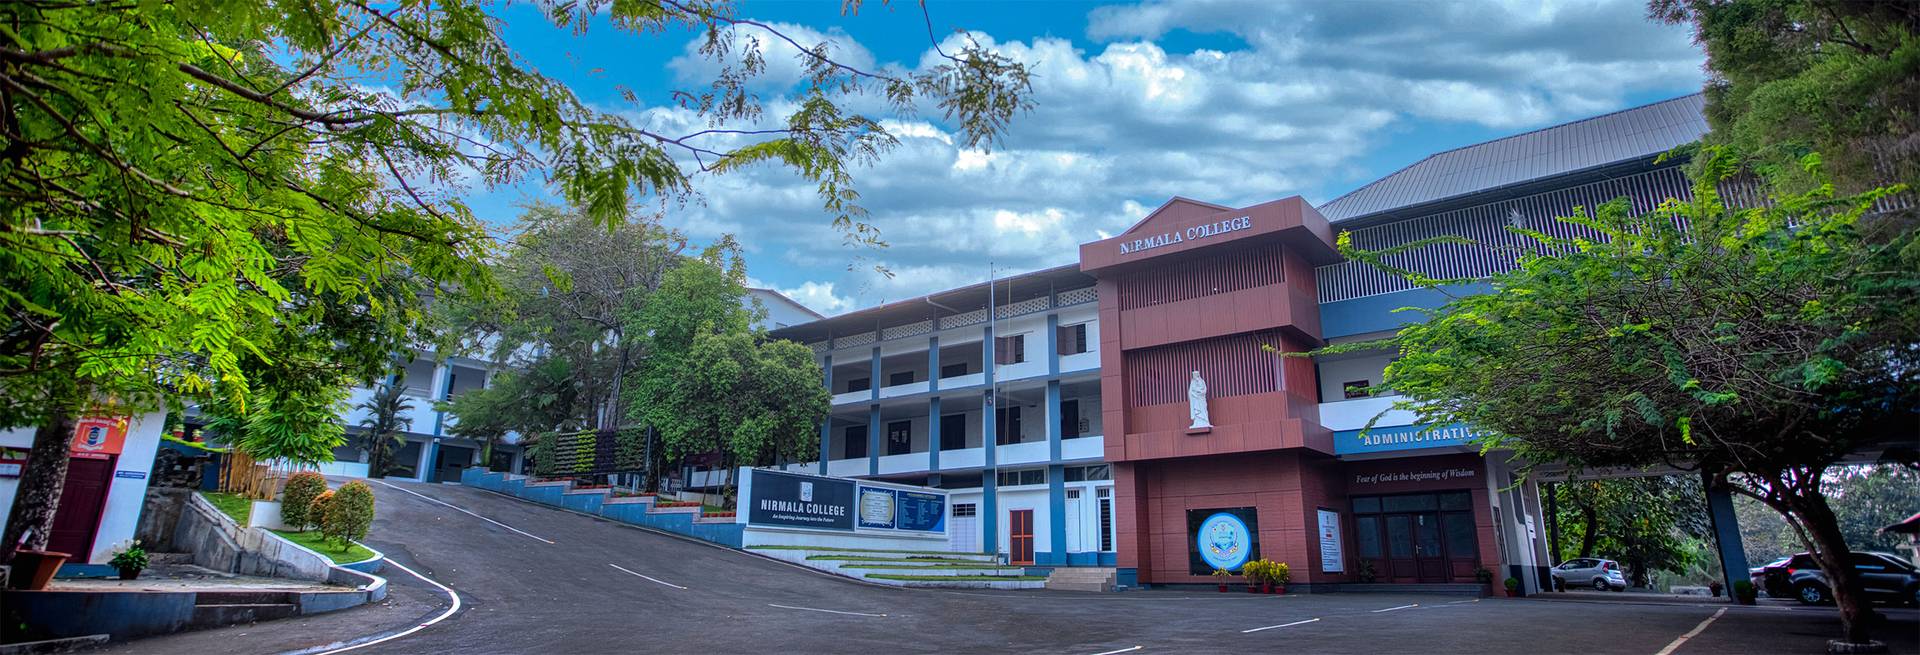 Nirmala College in Kerala, India. (Credit: Nirmala College.)